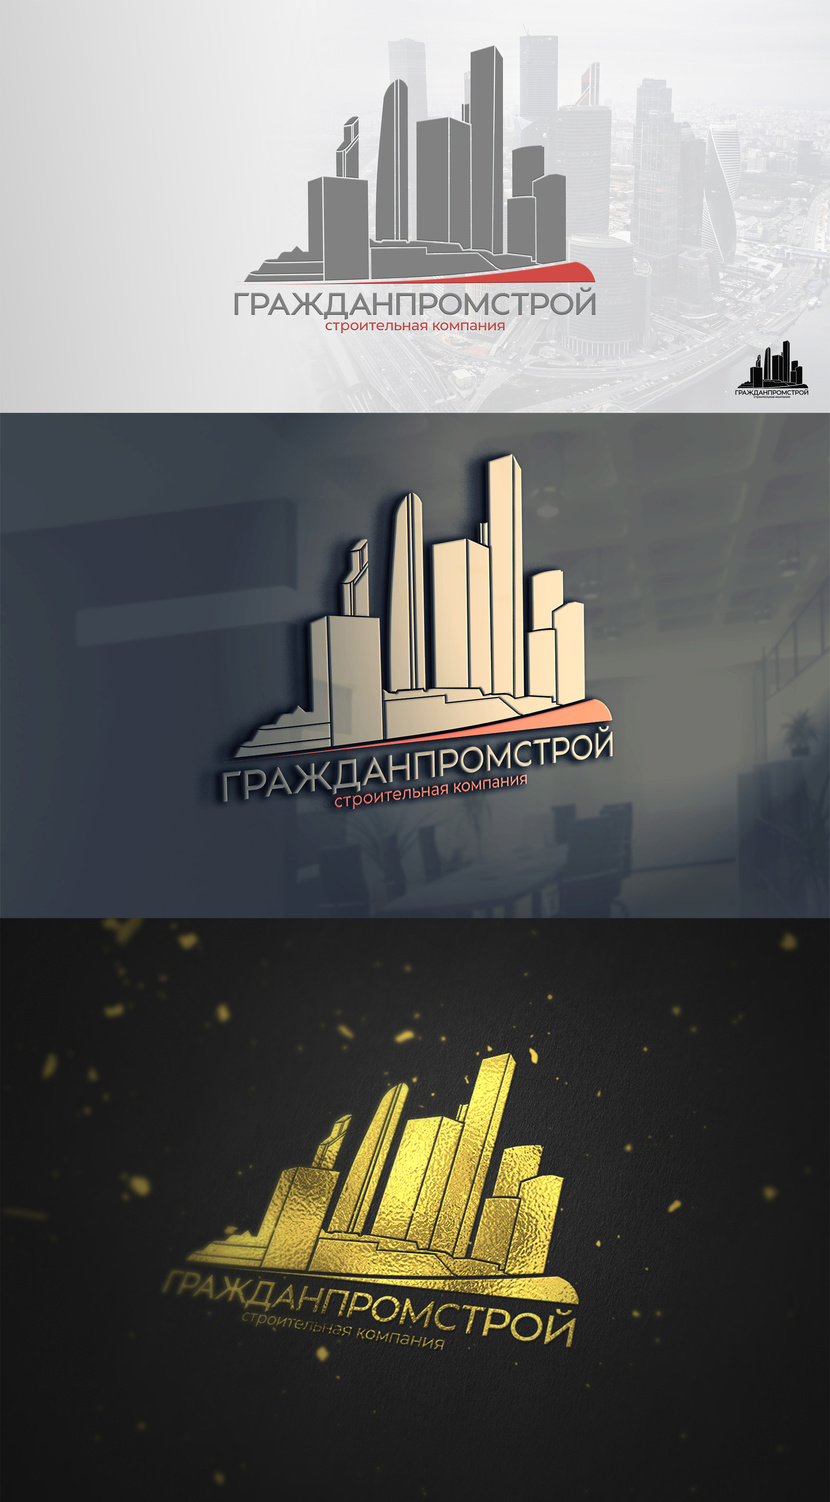 #2 - Разработка логотипа и фирменного стиля строительной компании